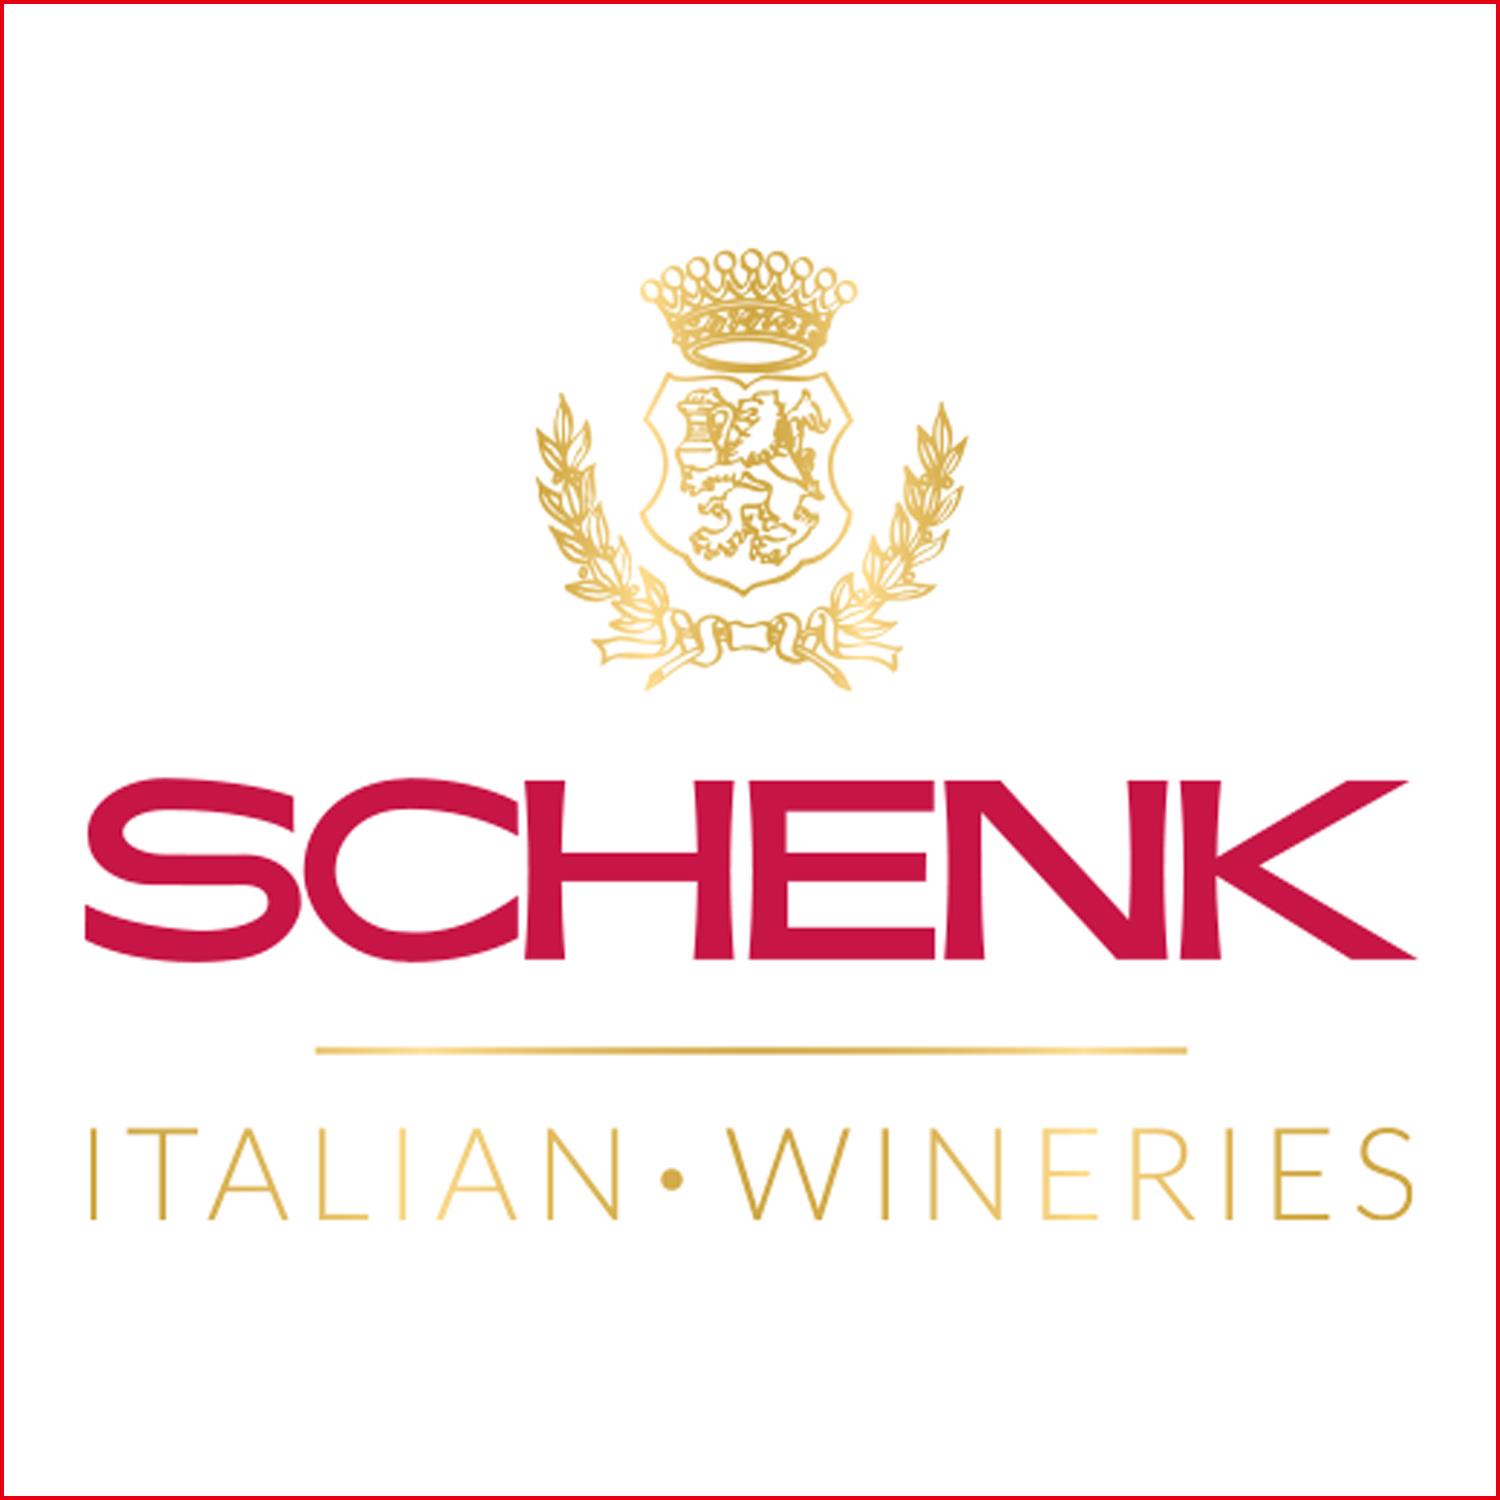 SCHENK Schenk Italian Wineries